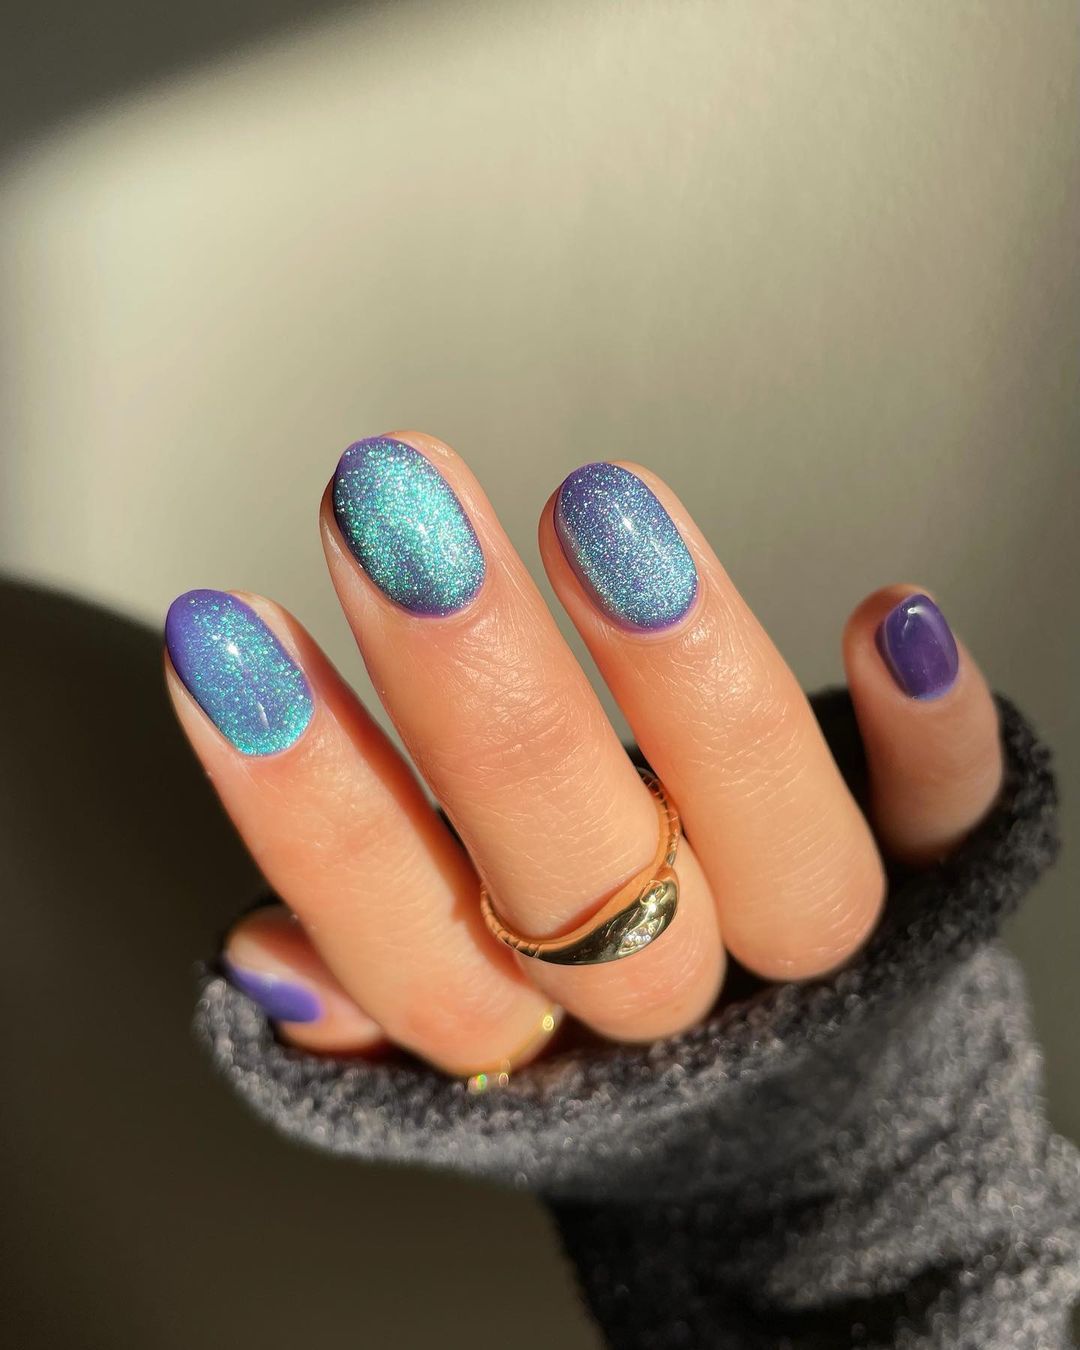 Uñas de terciopelo o 'velvet nails': la manicura top de Instagram